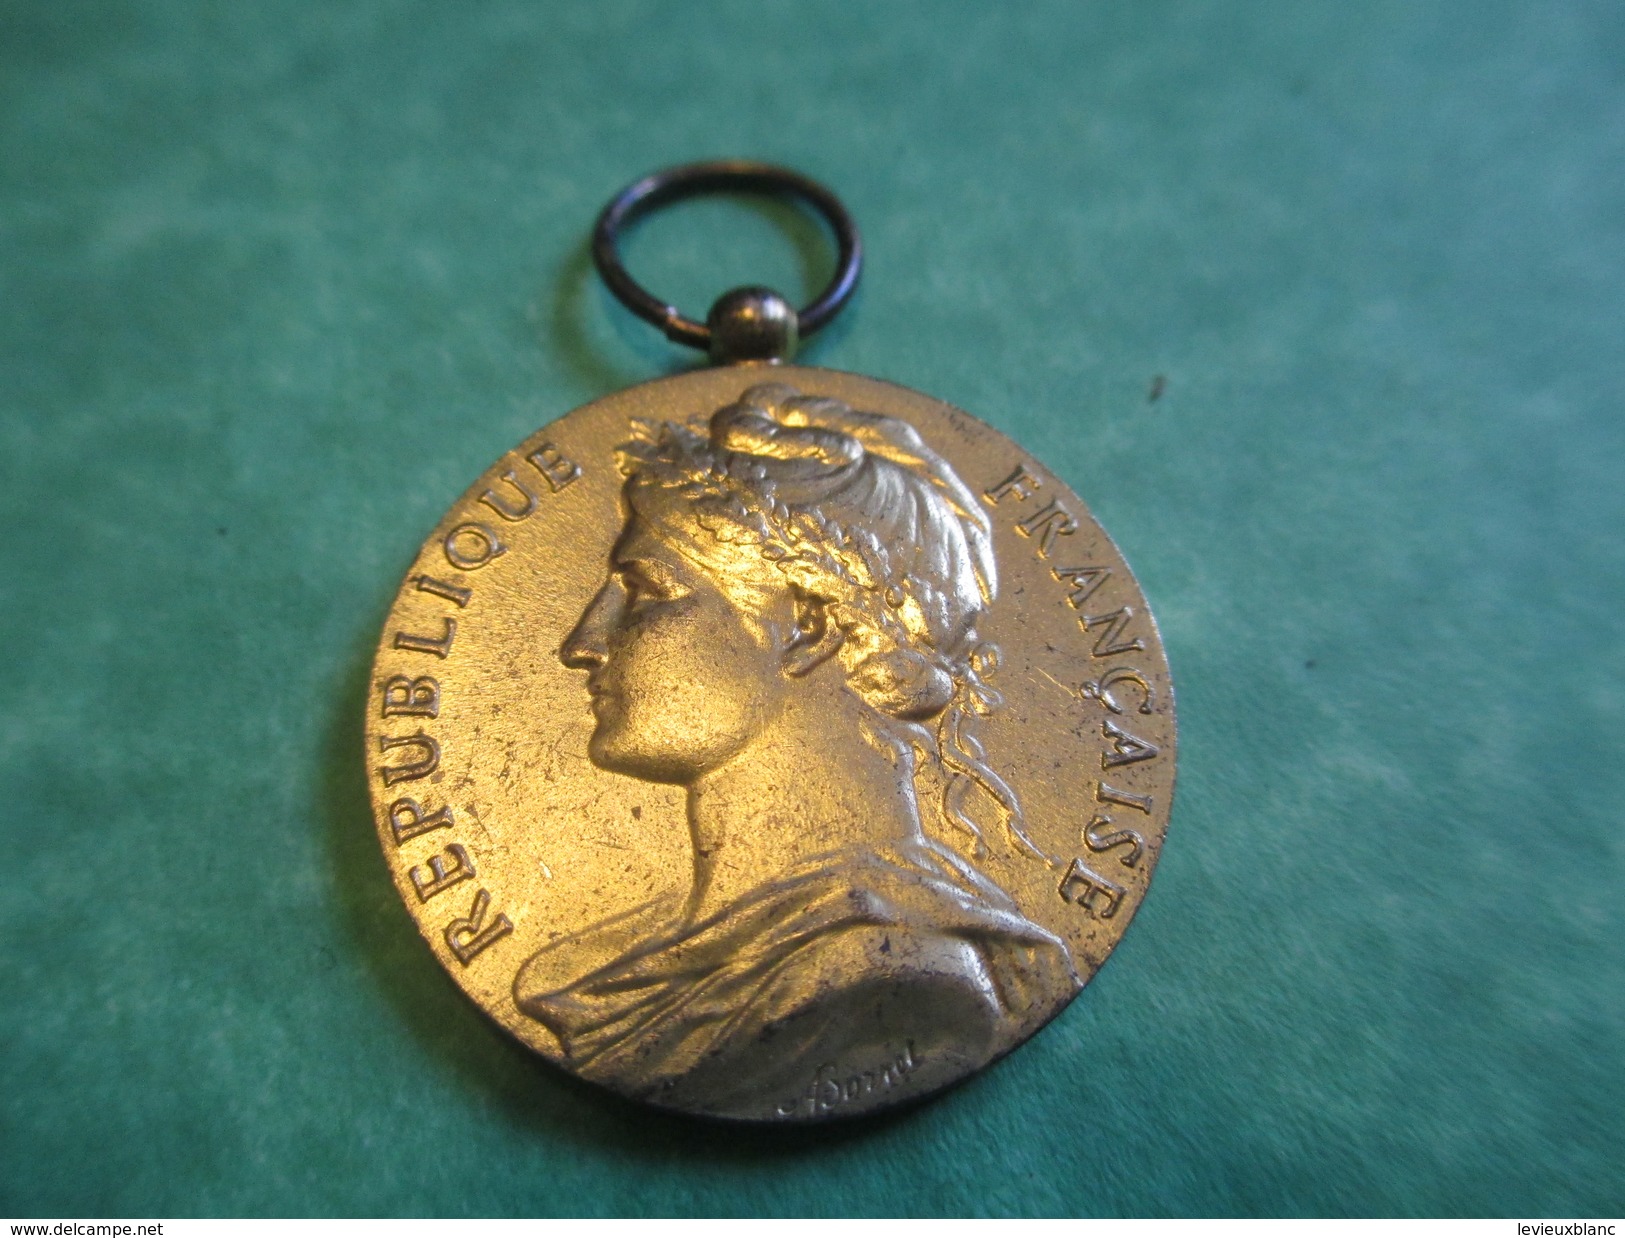 Médaille Du Travail/France/Or/Ministère Du Travail/Sans Ruban/Attribuée/M CARON / Honneur Travail/ 1976   MED100 - Francia